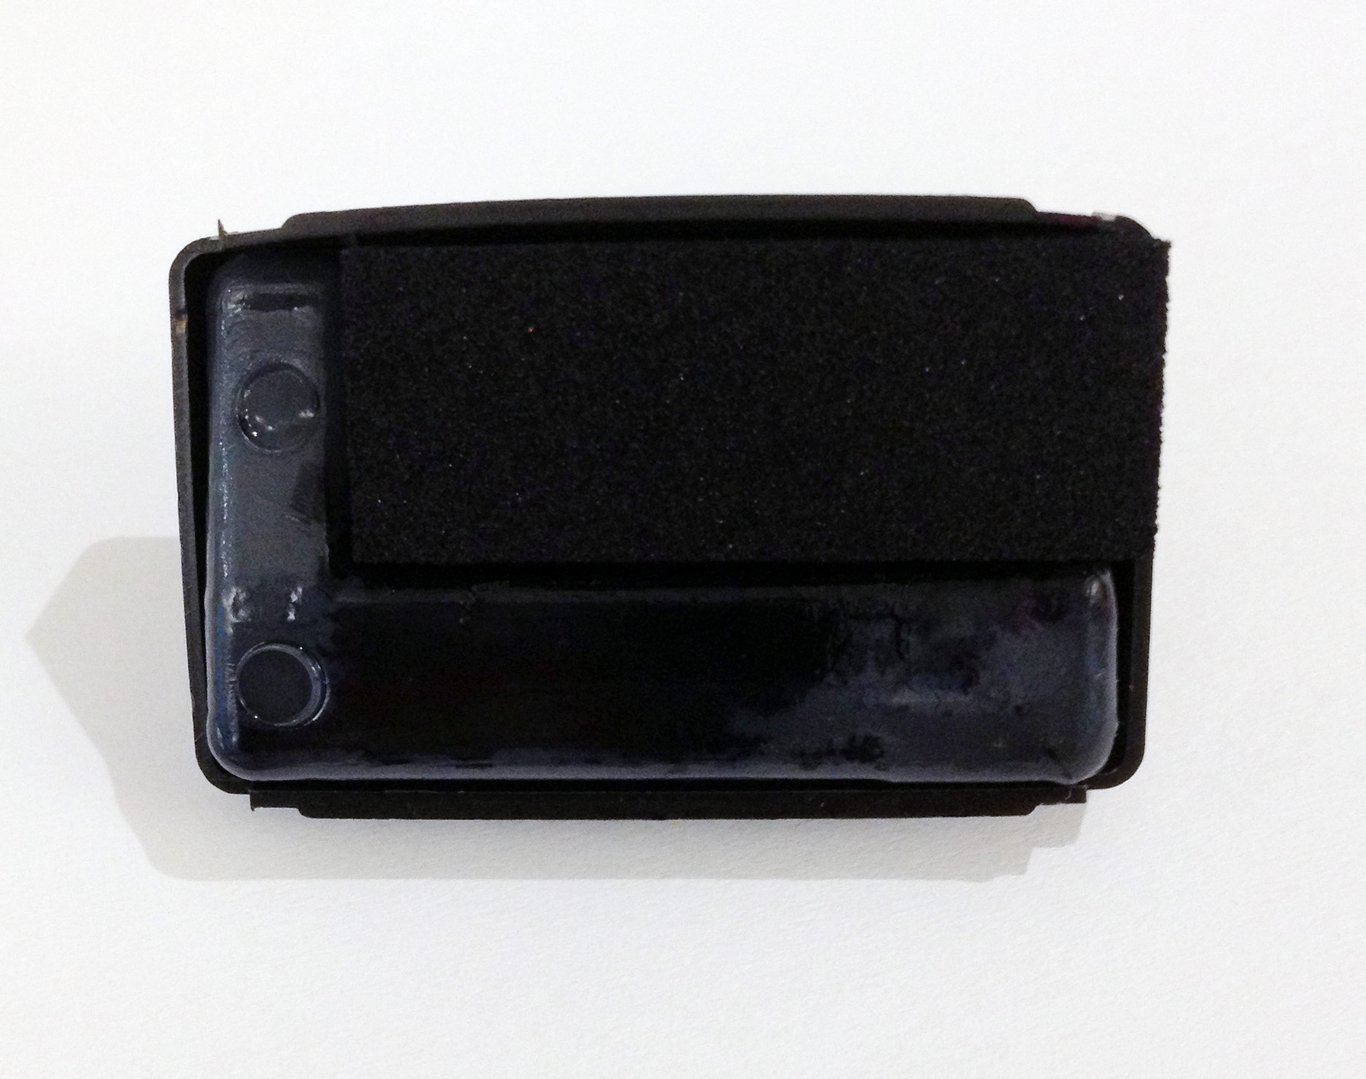 Dynkassett Reiner Colorbox 1 svart 38060013